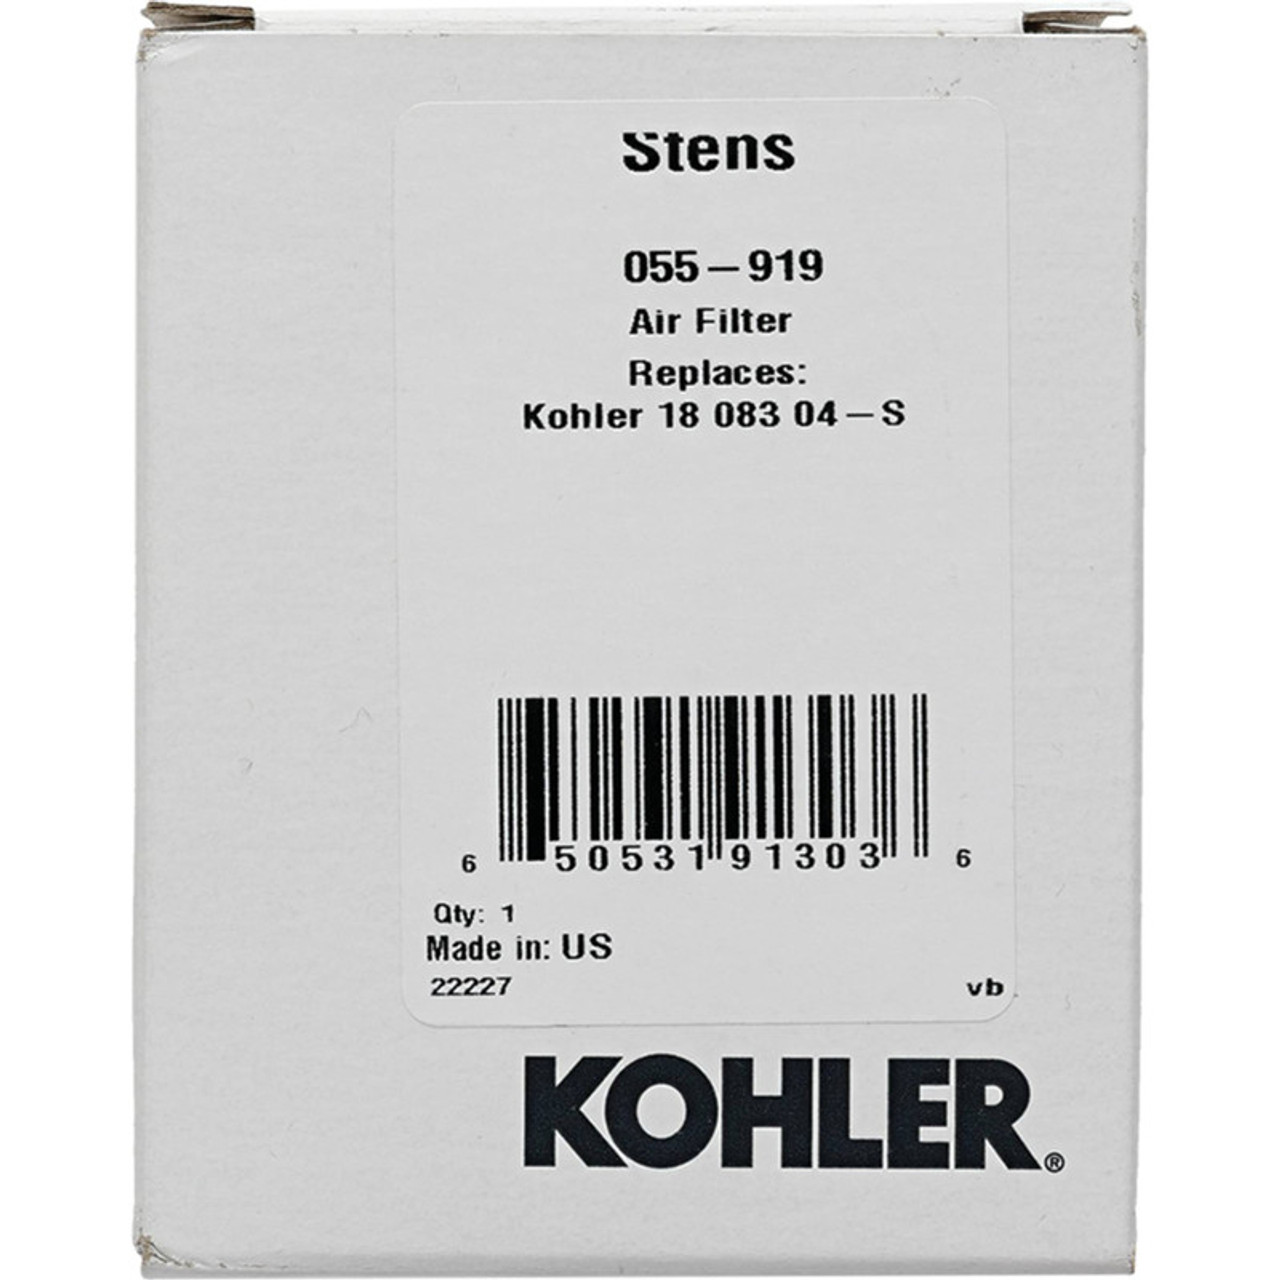 Stens 055-919 Kohler OEM Carded Air Filter - (Alternate part for Kohler 18 083 04-S)